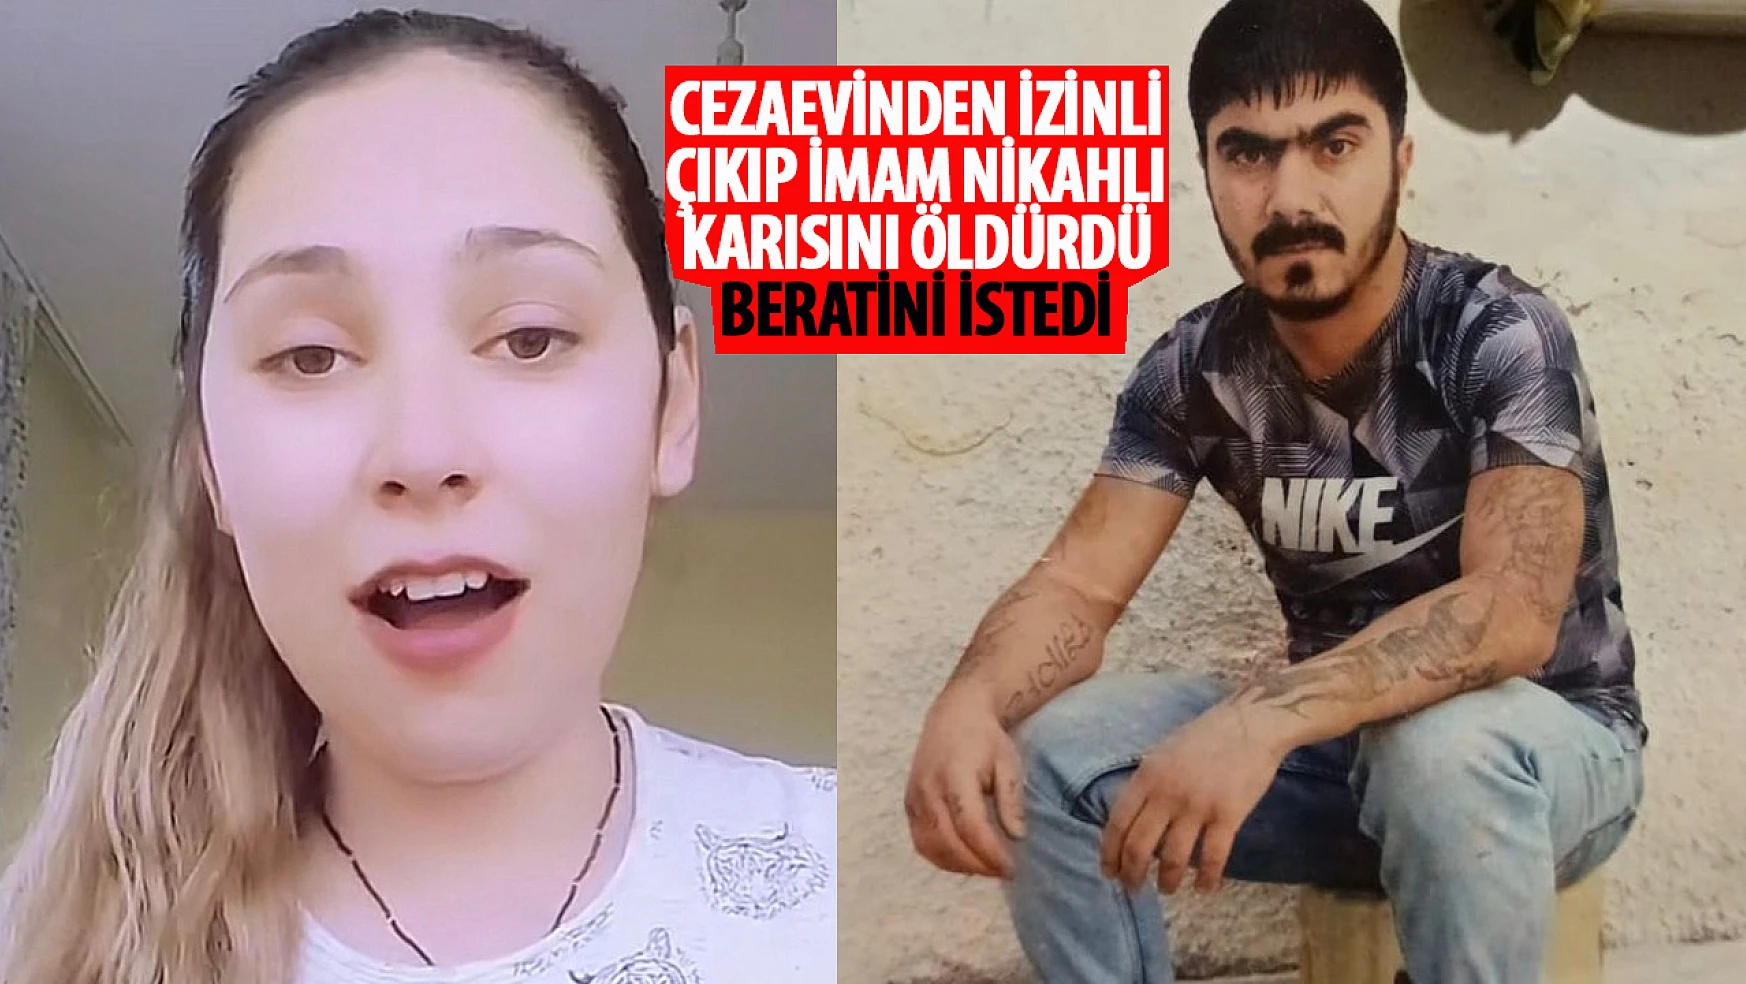 Beraatını istedi! Konya'daki o cinayette sanığın yargılanmasına devam edildi!